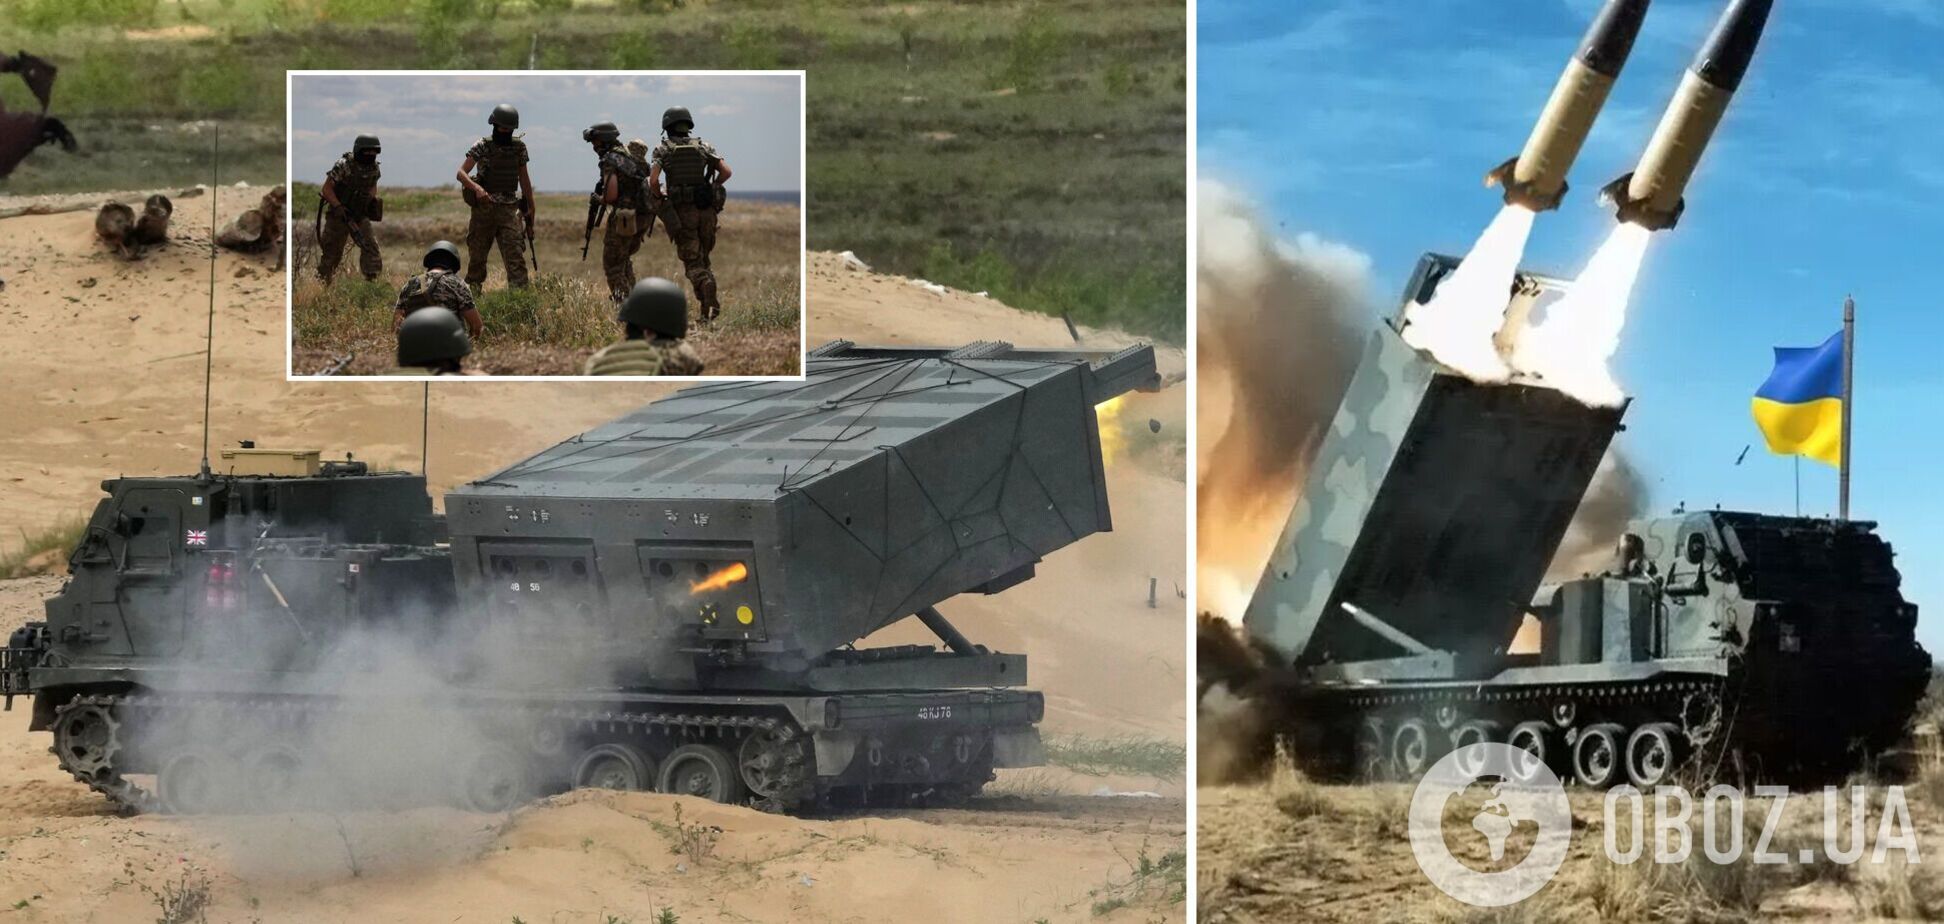 Українські військові проходять навчання у Британії, щоб використовувати новітні ракетні системи. Фото